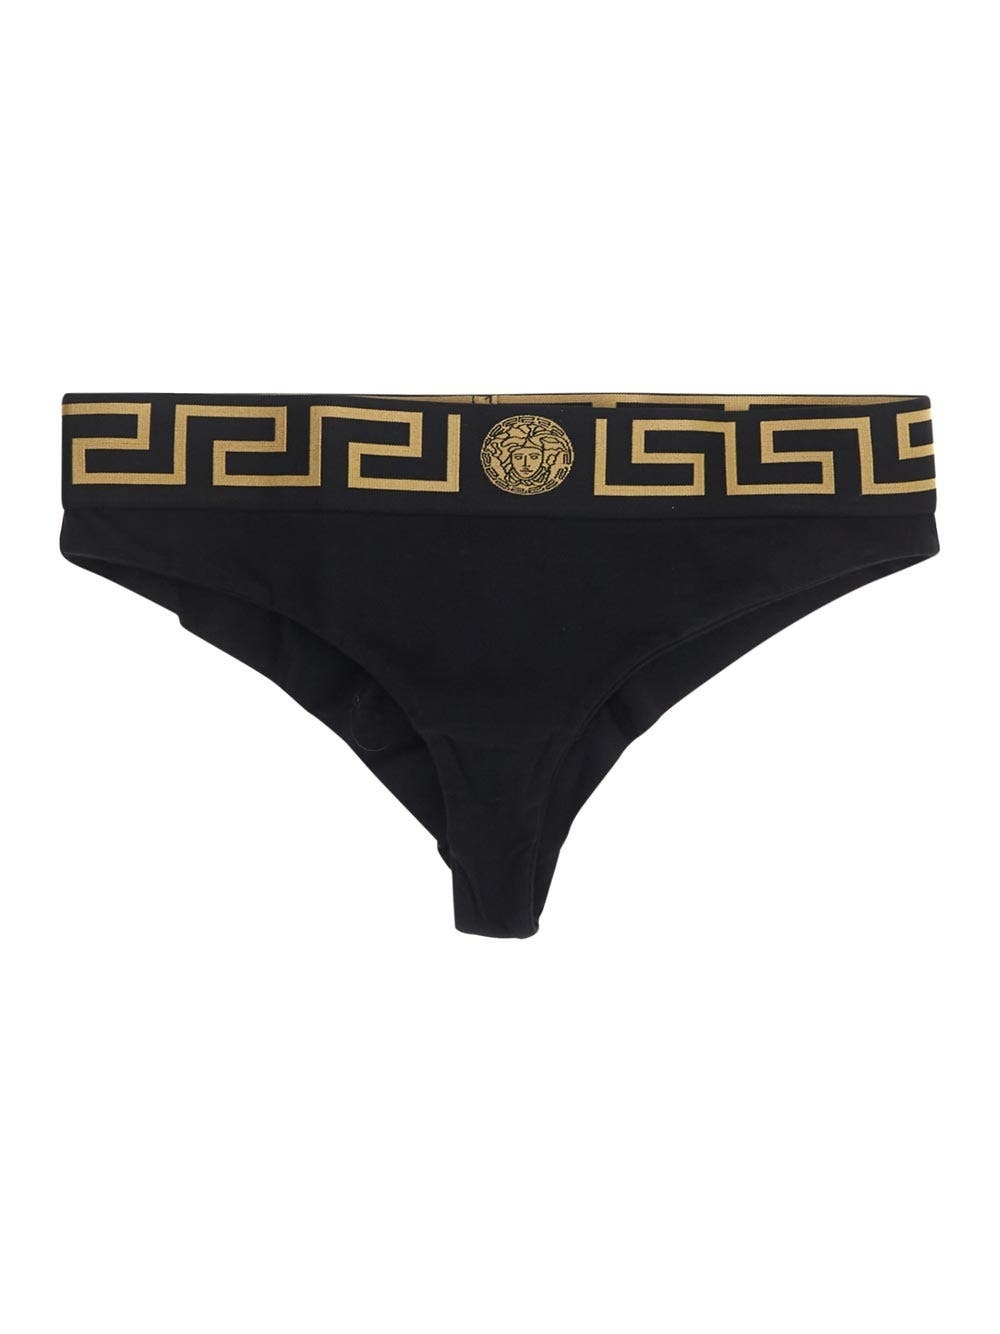 Versace Underwear Black Greca Border Briefs Versace Underwear